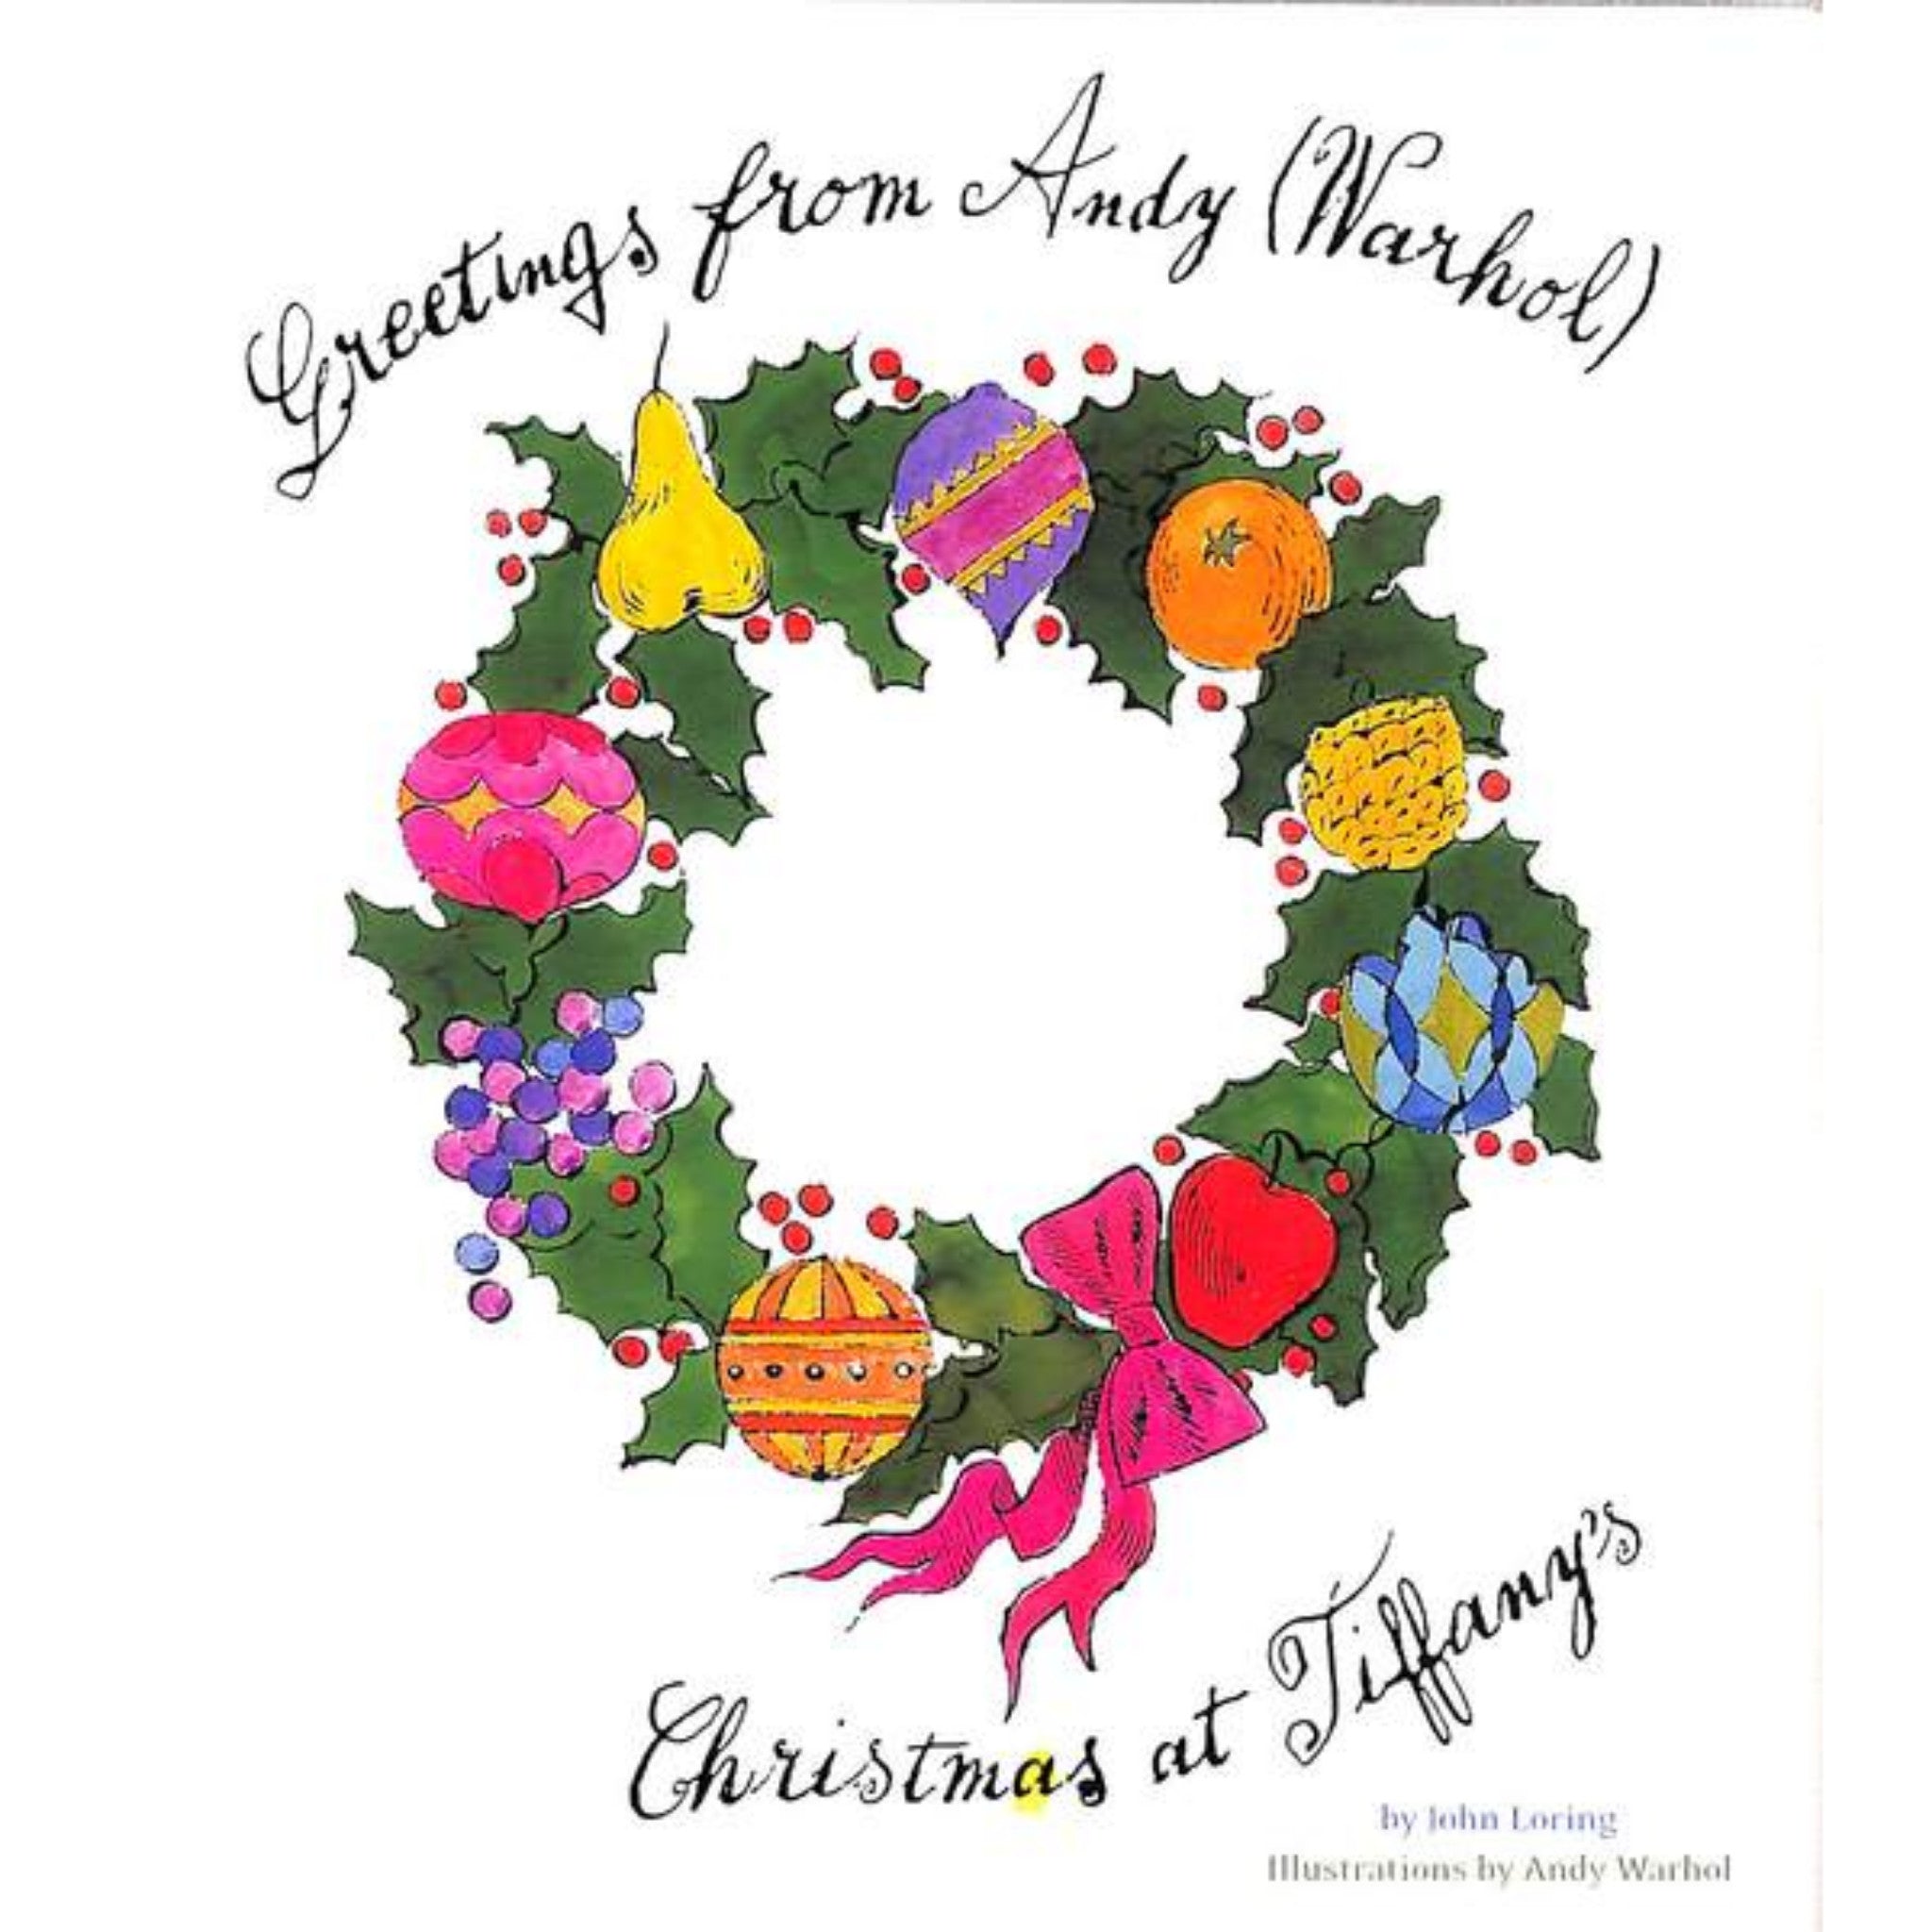 Greetings From Andy (Warhol): Christmas At Tiffany's" 2004 LORING, Jo